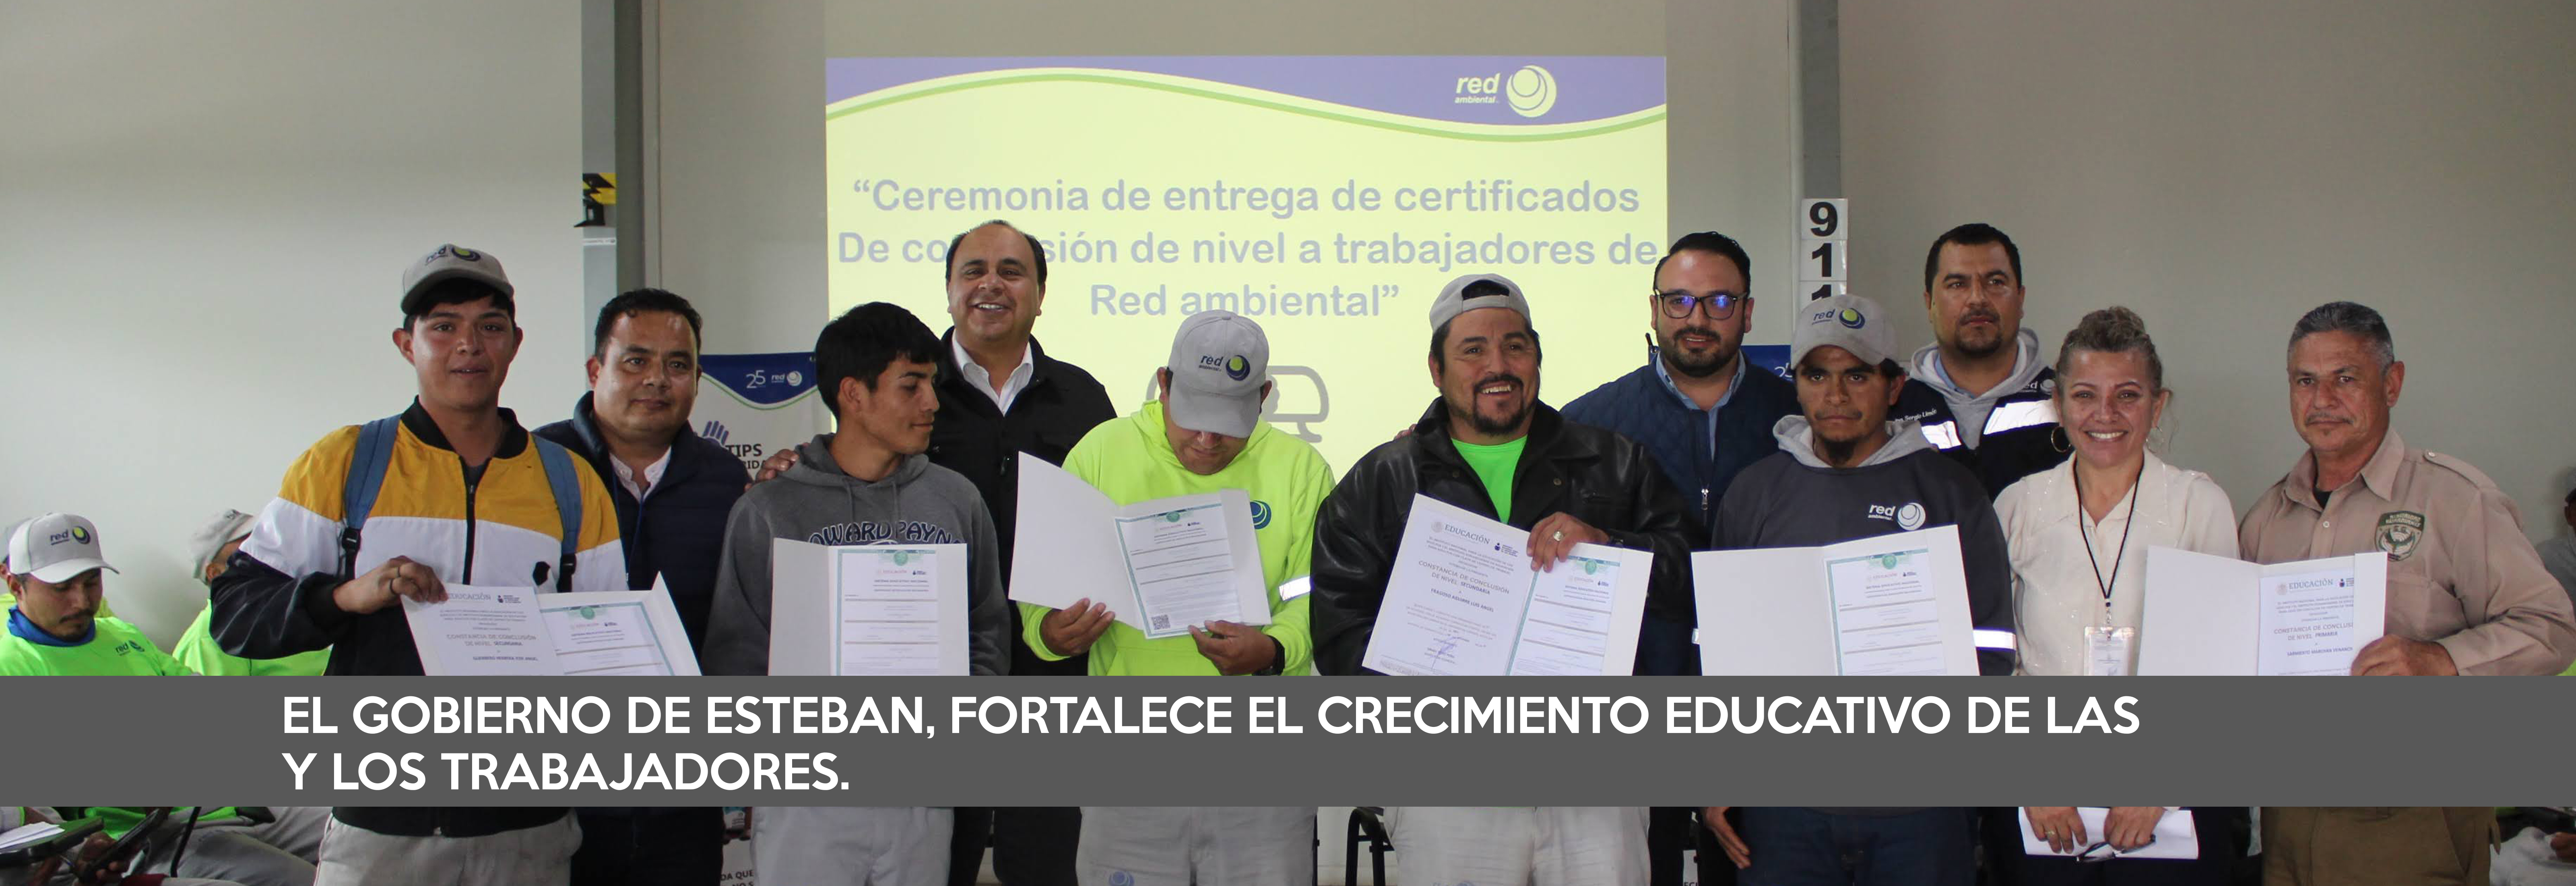 El gobierno de Esteban, fortalece el crecimiento educativo de las y los trabajadores.